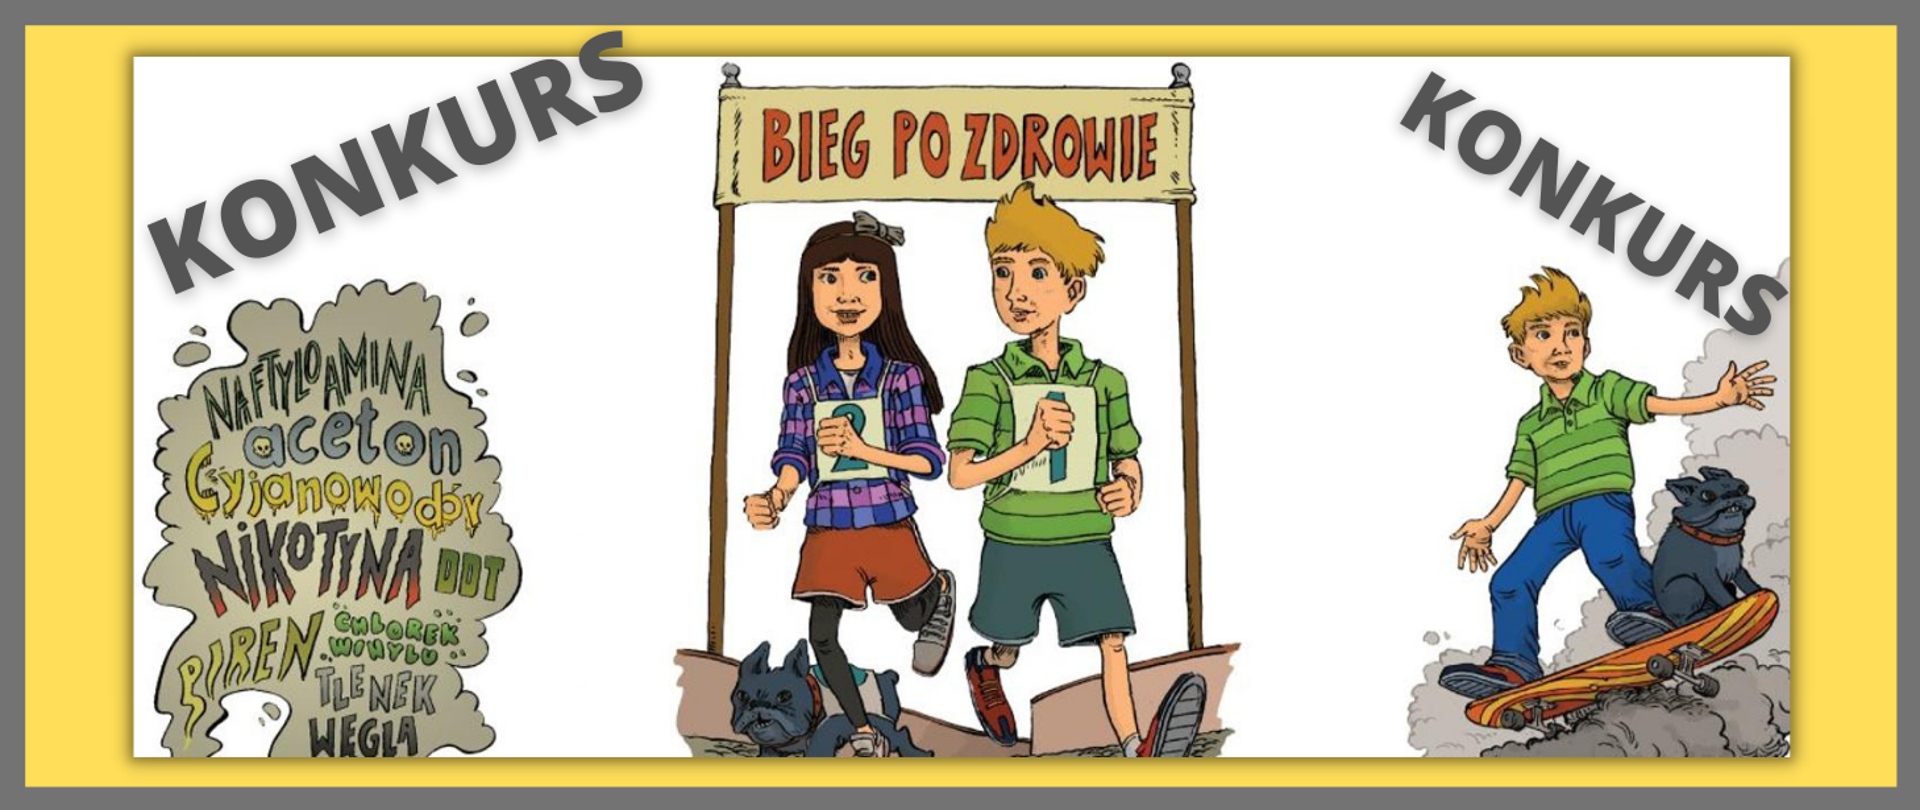 Grafika przedstawia ilustrację dziewczynkę oraz chłopca pod transparentem BIEG PO ZDROWIE, chłopca na deskorolce, imitację chmury dymu tytoniowego. 